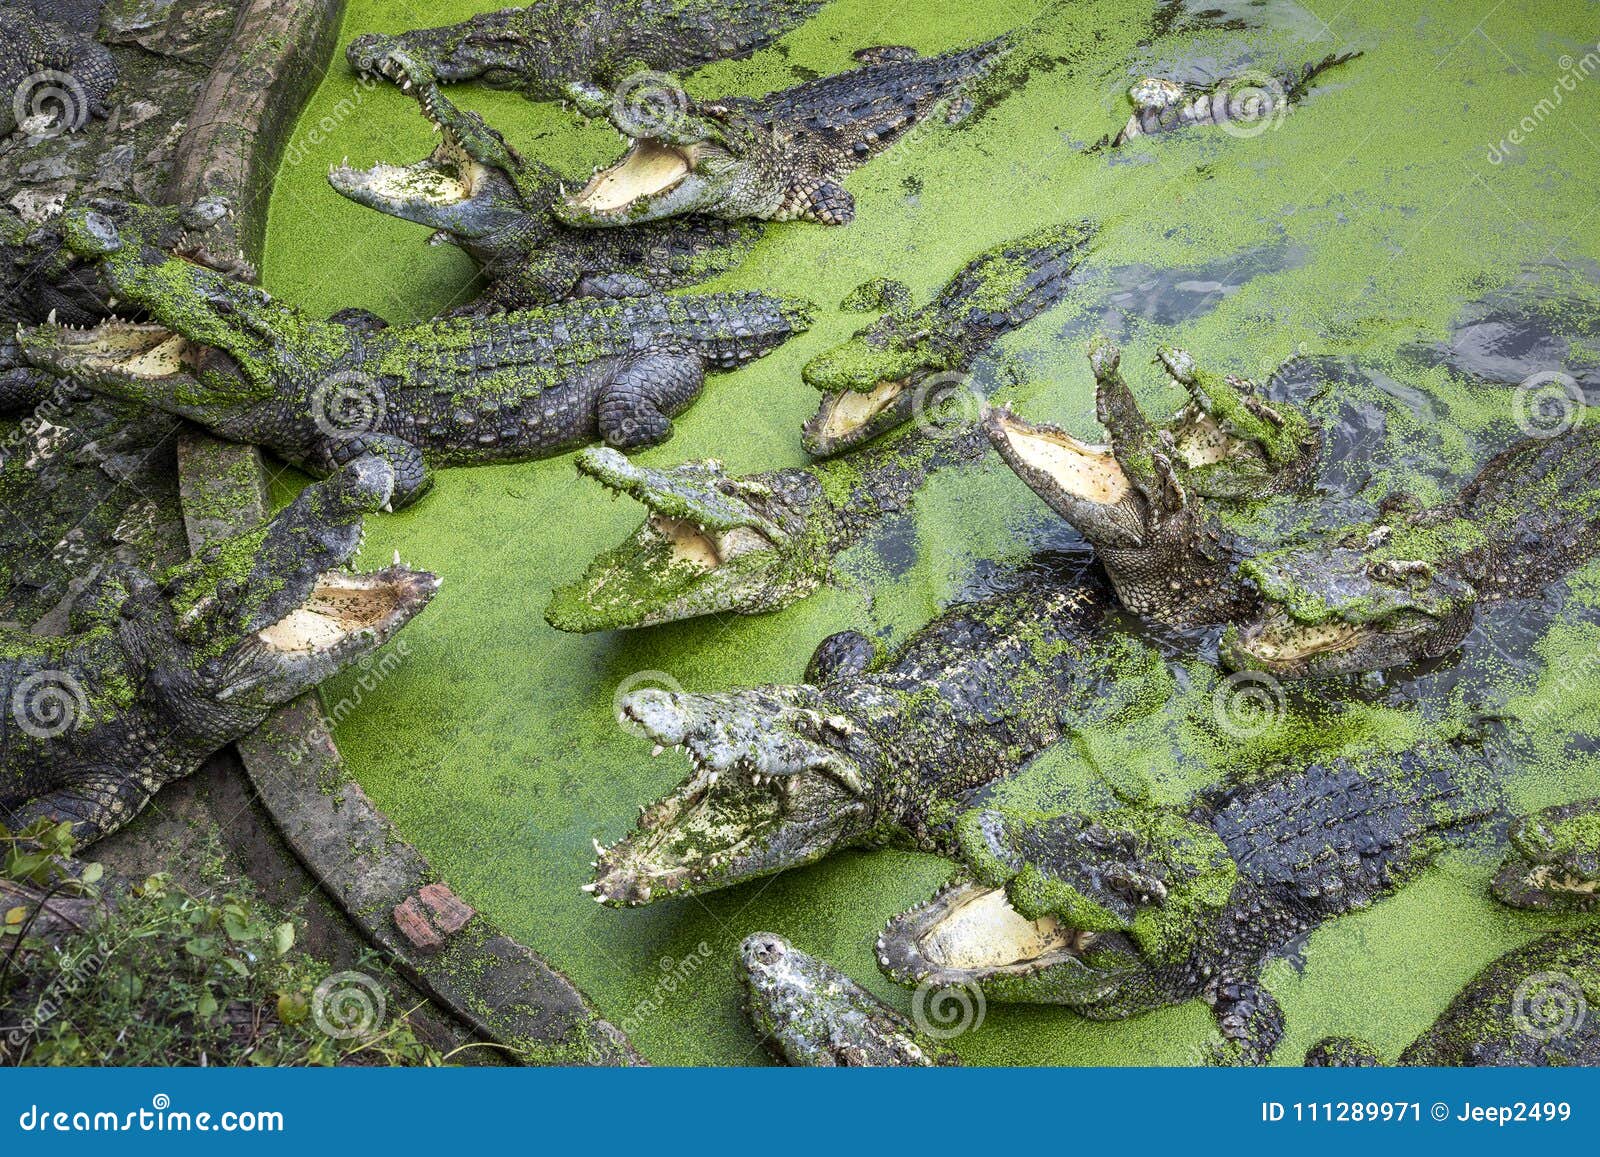 Крокодил в водоеме. Пруд с крокодилами. Крокодил в прудике. Водоем для крокодилов. Крокодилы в водоёме вид сверху.